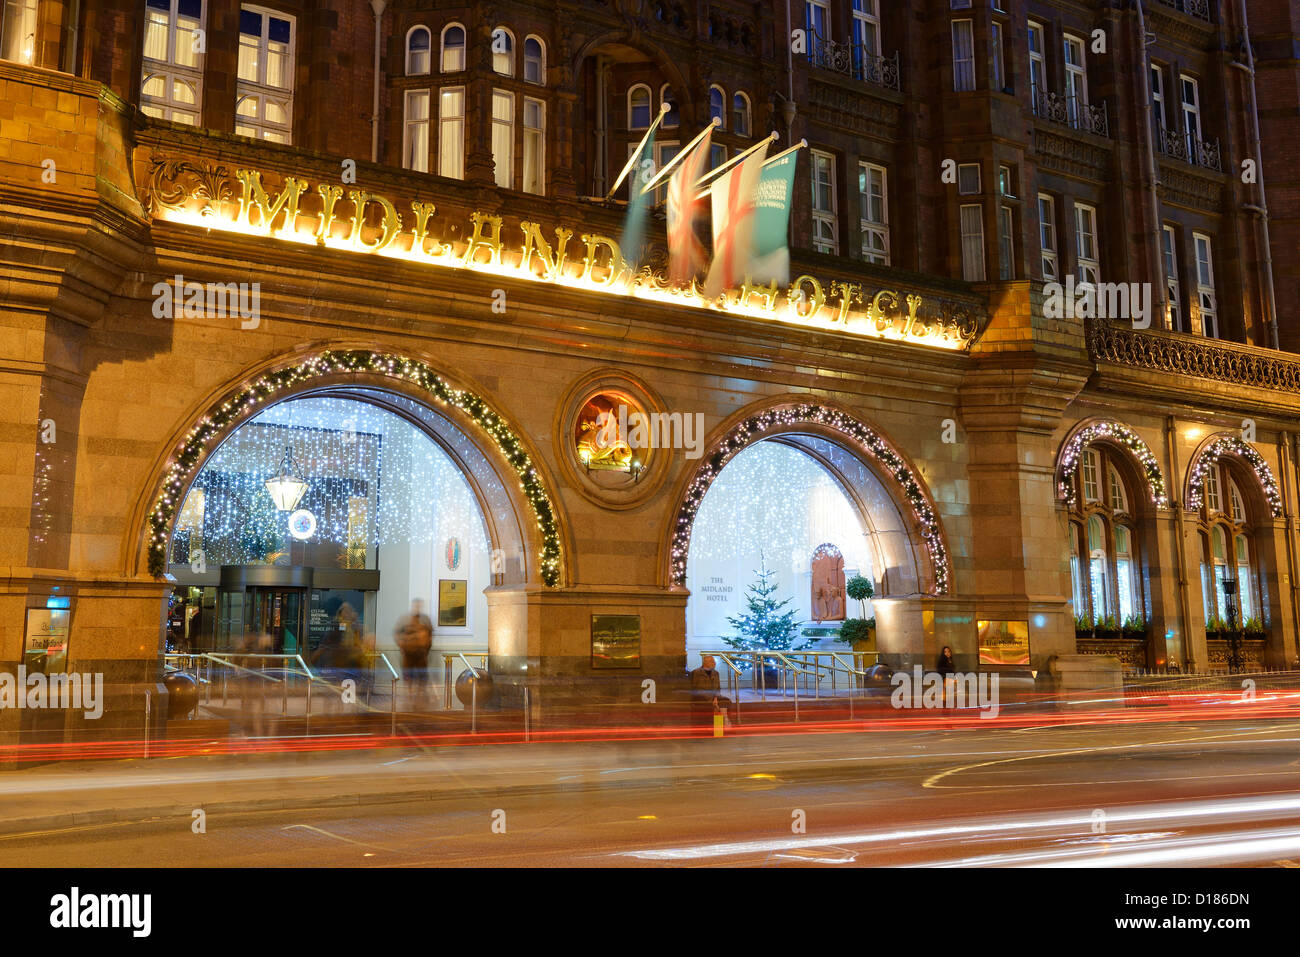 La entrada principal del Hotel Midland en el centro de la ciudad de Manchester durante la noche Foto de stock